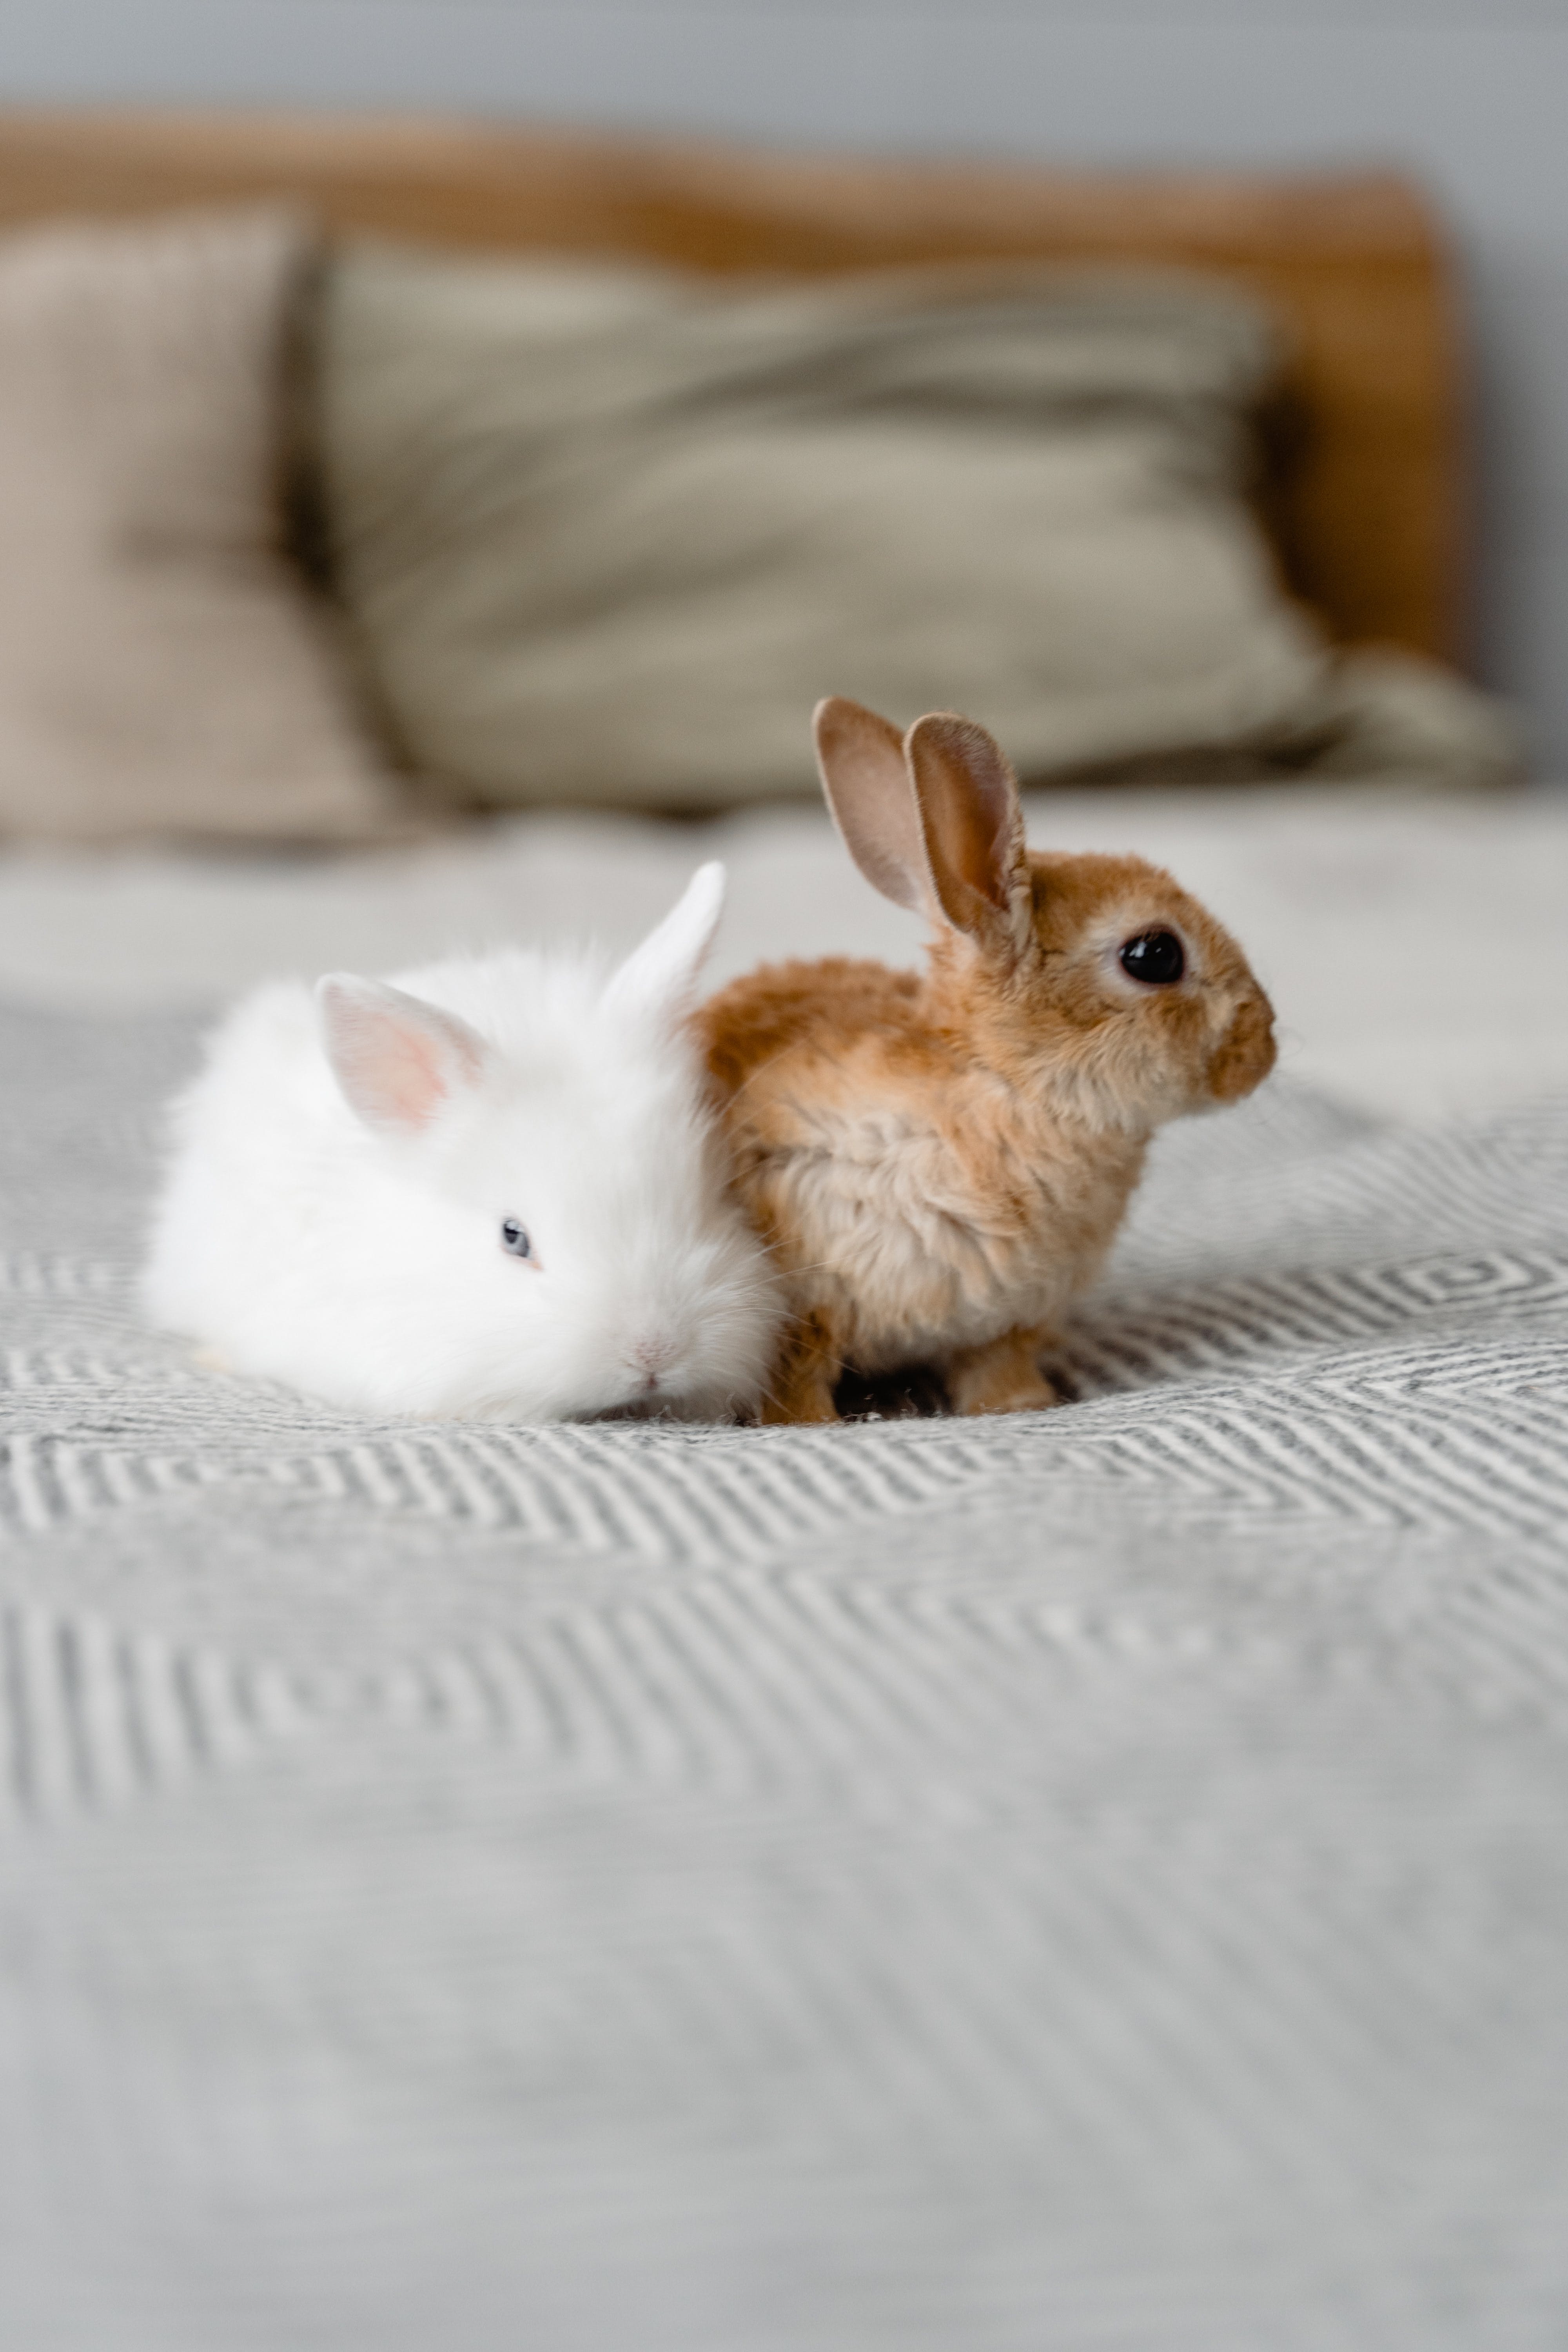  Kaninchen Hintergrundbild 4000x6000. 1.Hasen Bilder Und Fotos · Kostenlos Downloaden · Stock Fotos